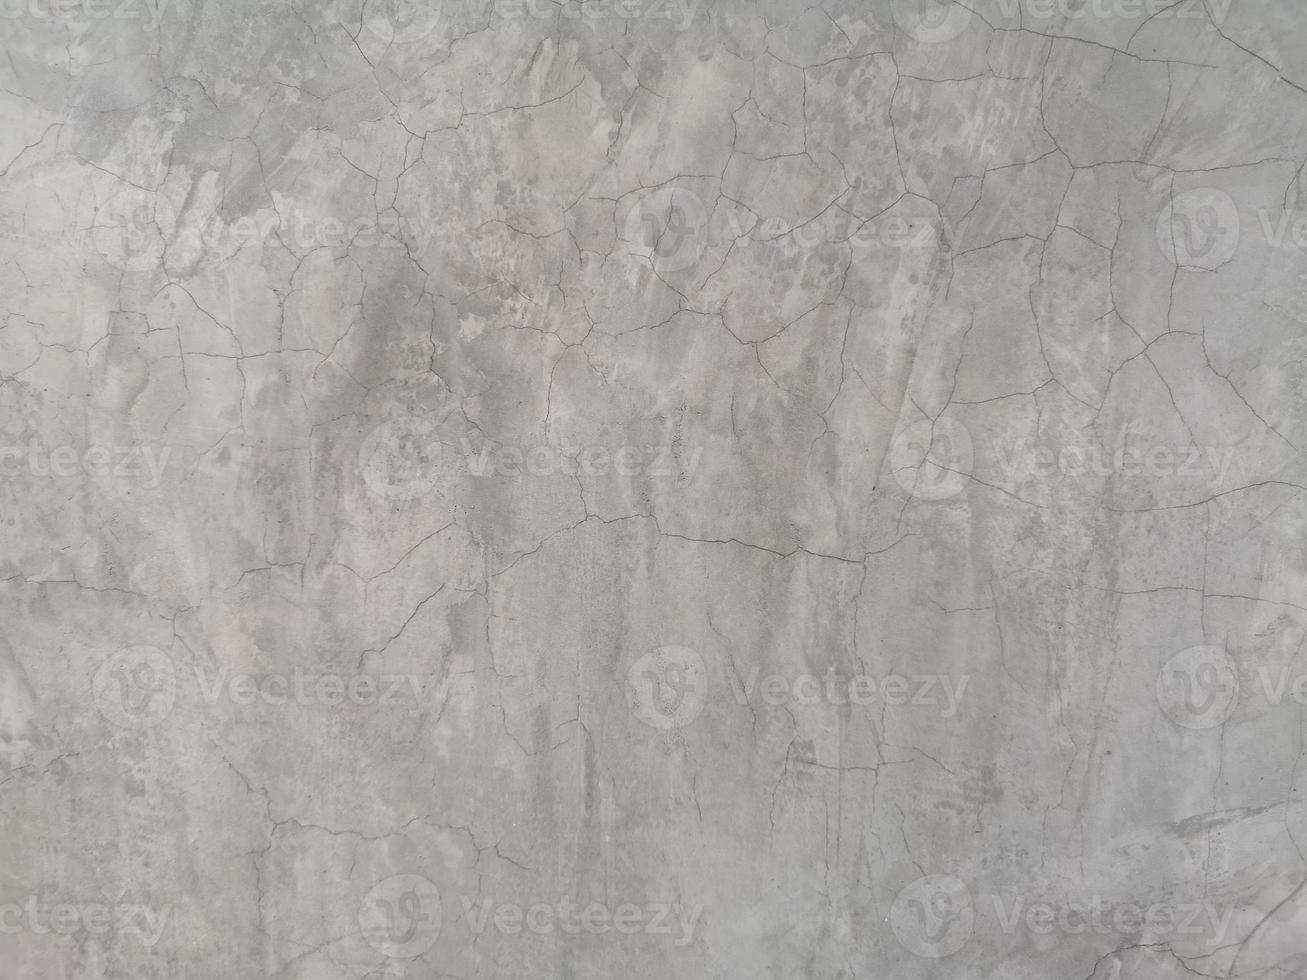 crepa sul muro di cemento colore grigio lucido nudo e superficie liscia struttura materiale in cemento sfondo vintage dettaglio architetto costruzione pareti in mattoni intonacate e dipinte foto